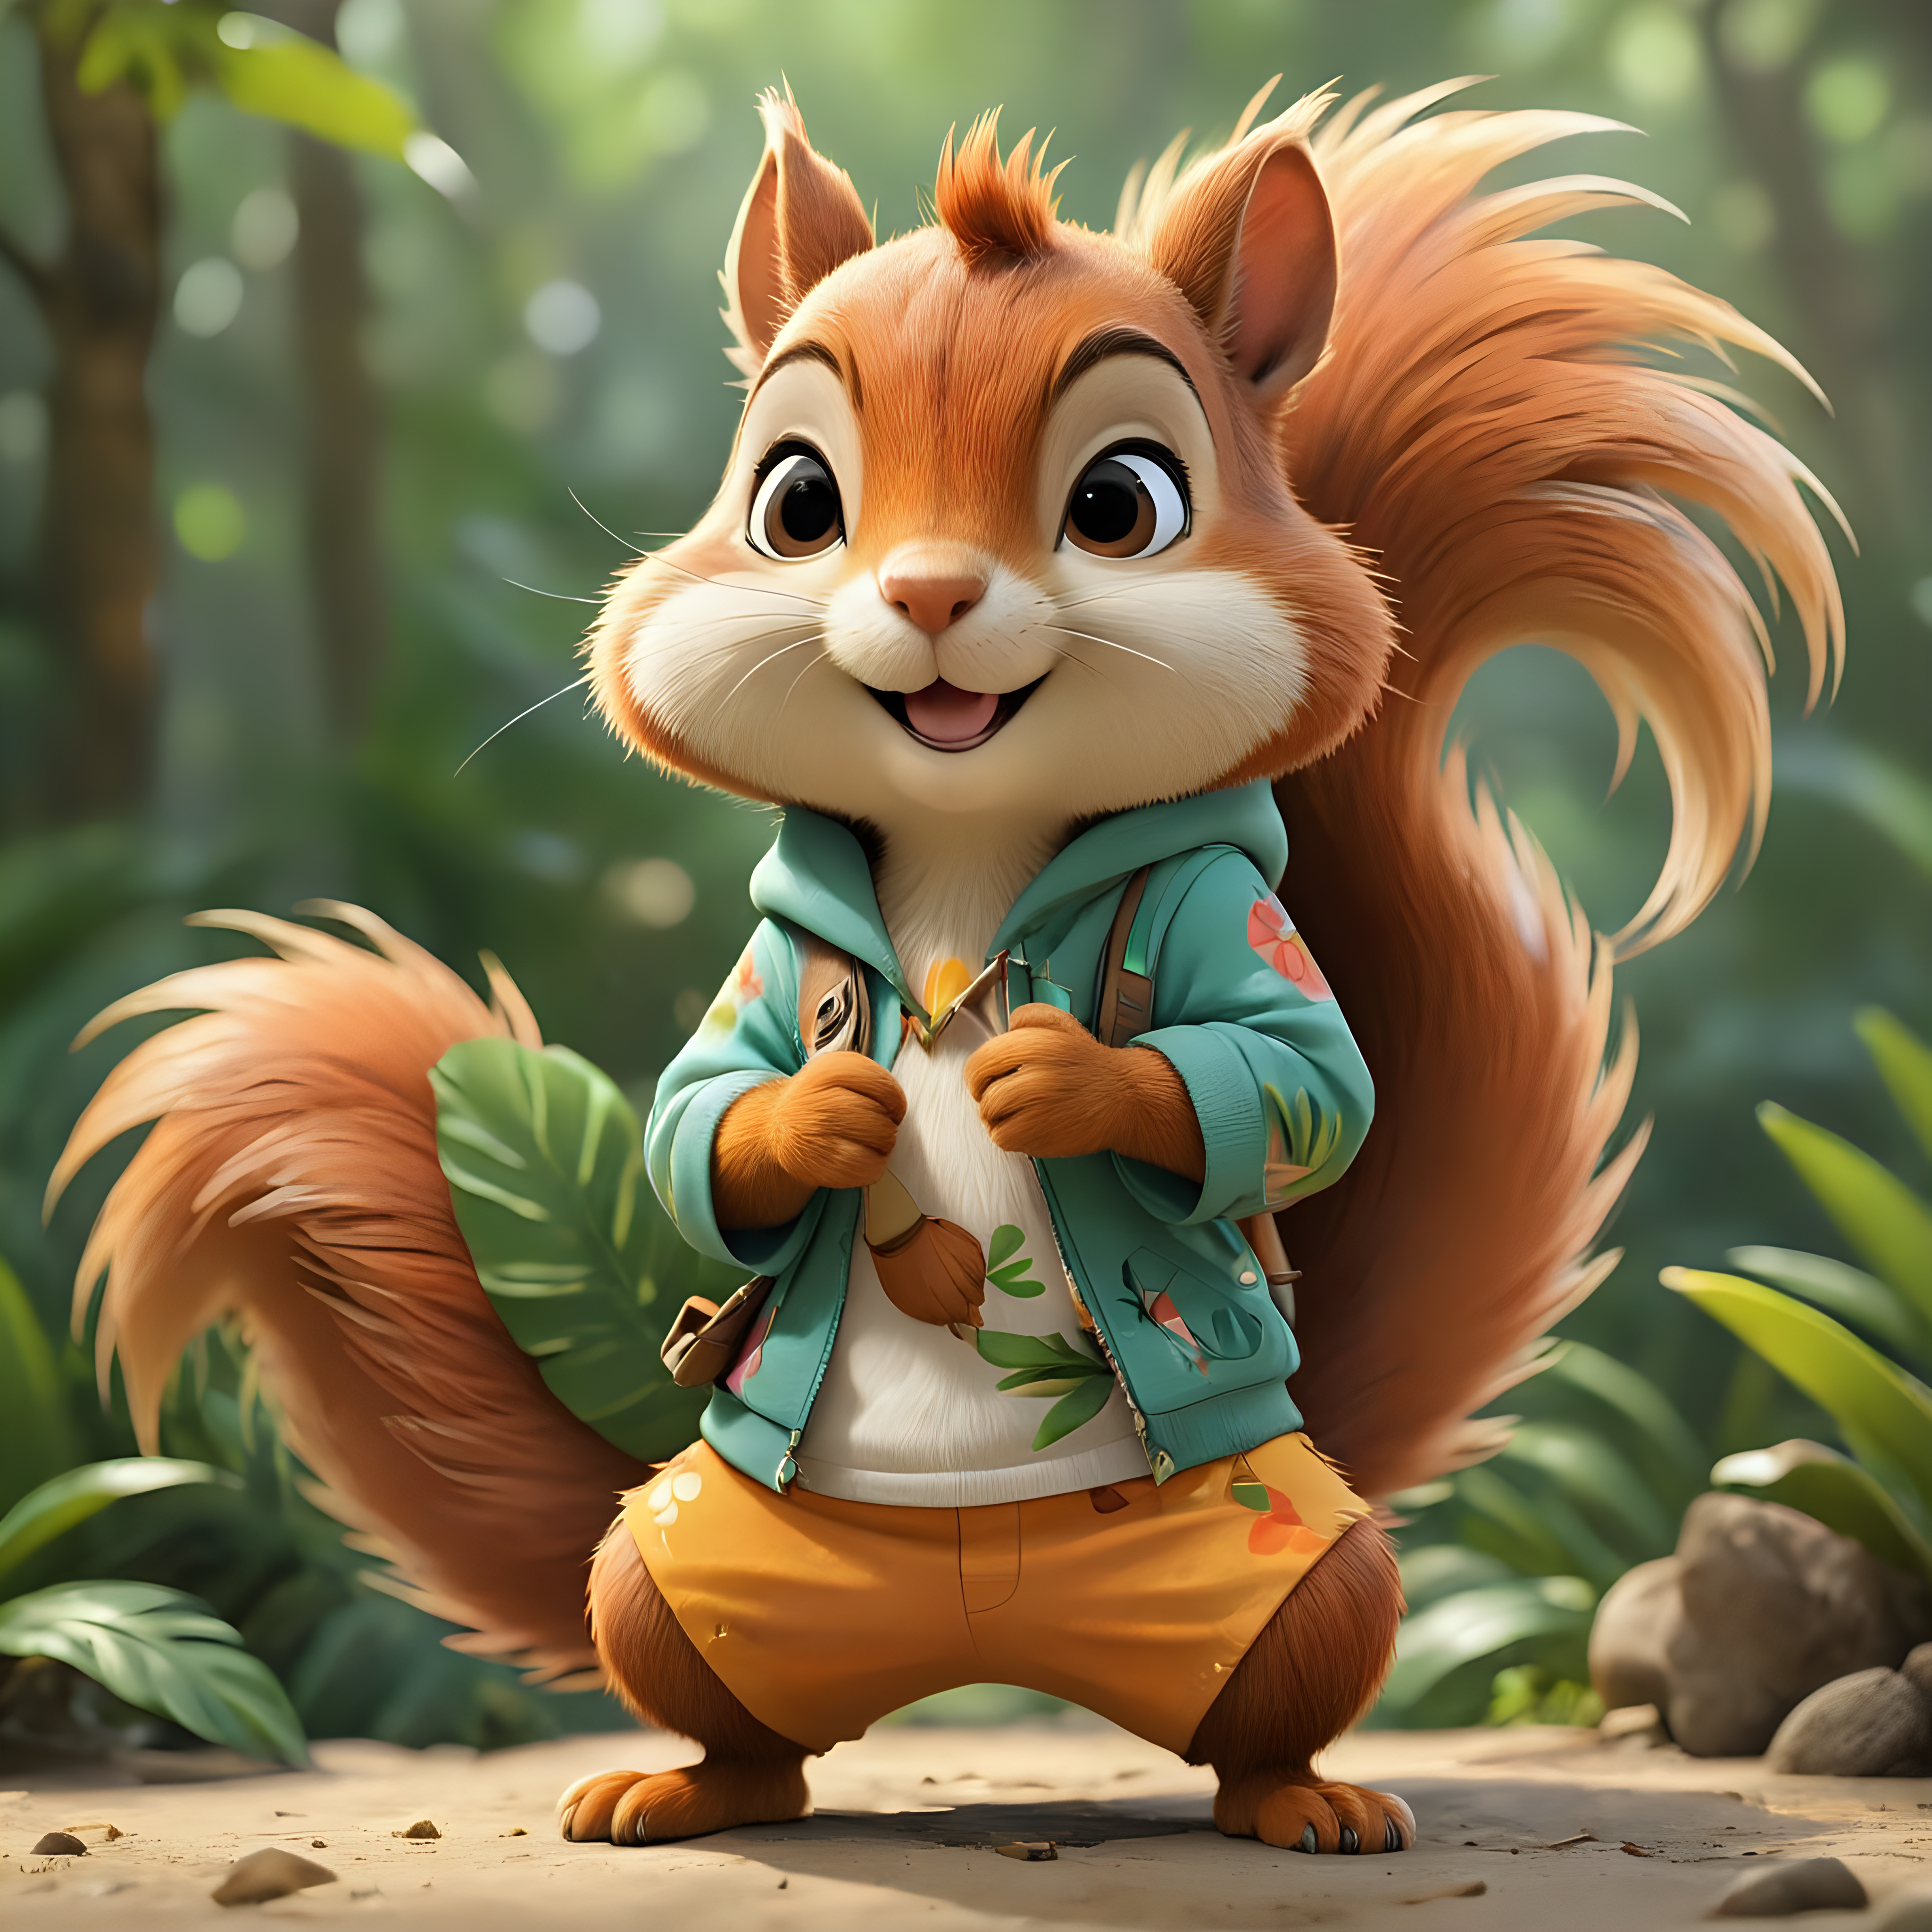 Adorable Cartoon Squirrel Wearing Tropical Attire